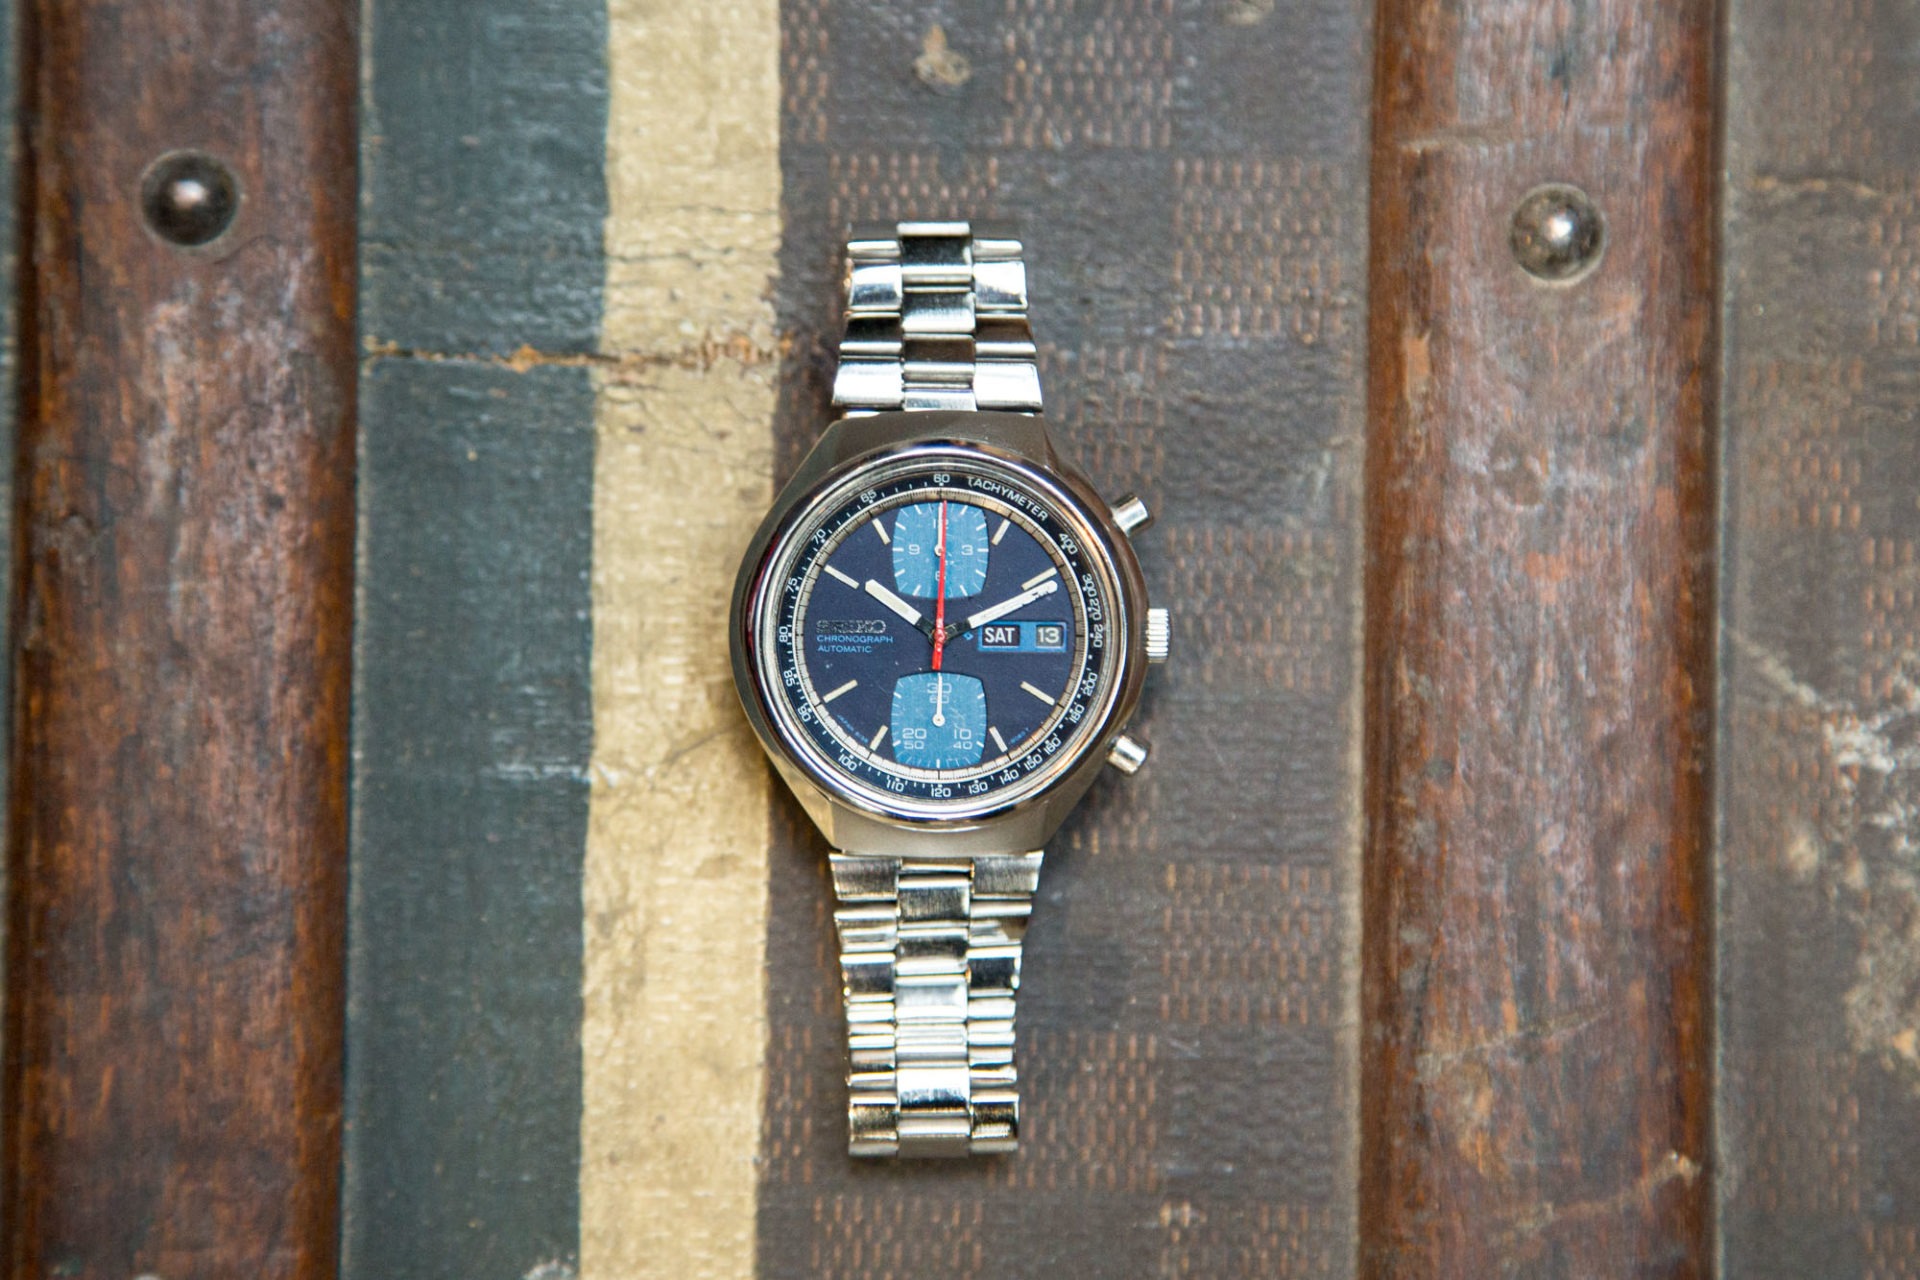 Aguttes - Vente de montres de collection - Chronographe Seiko 6138